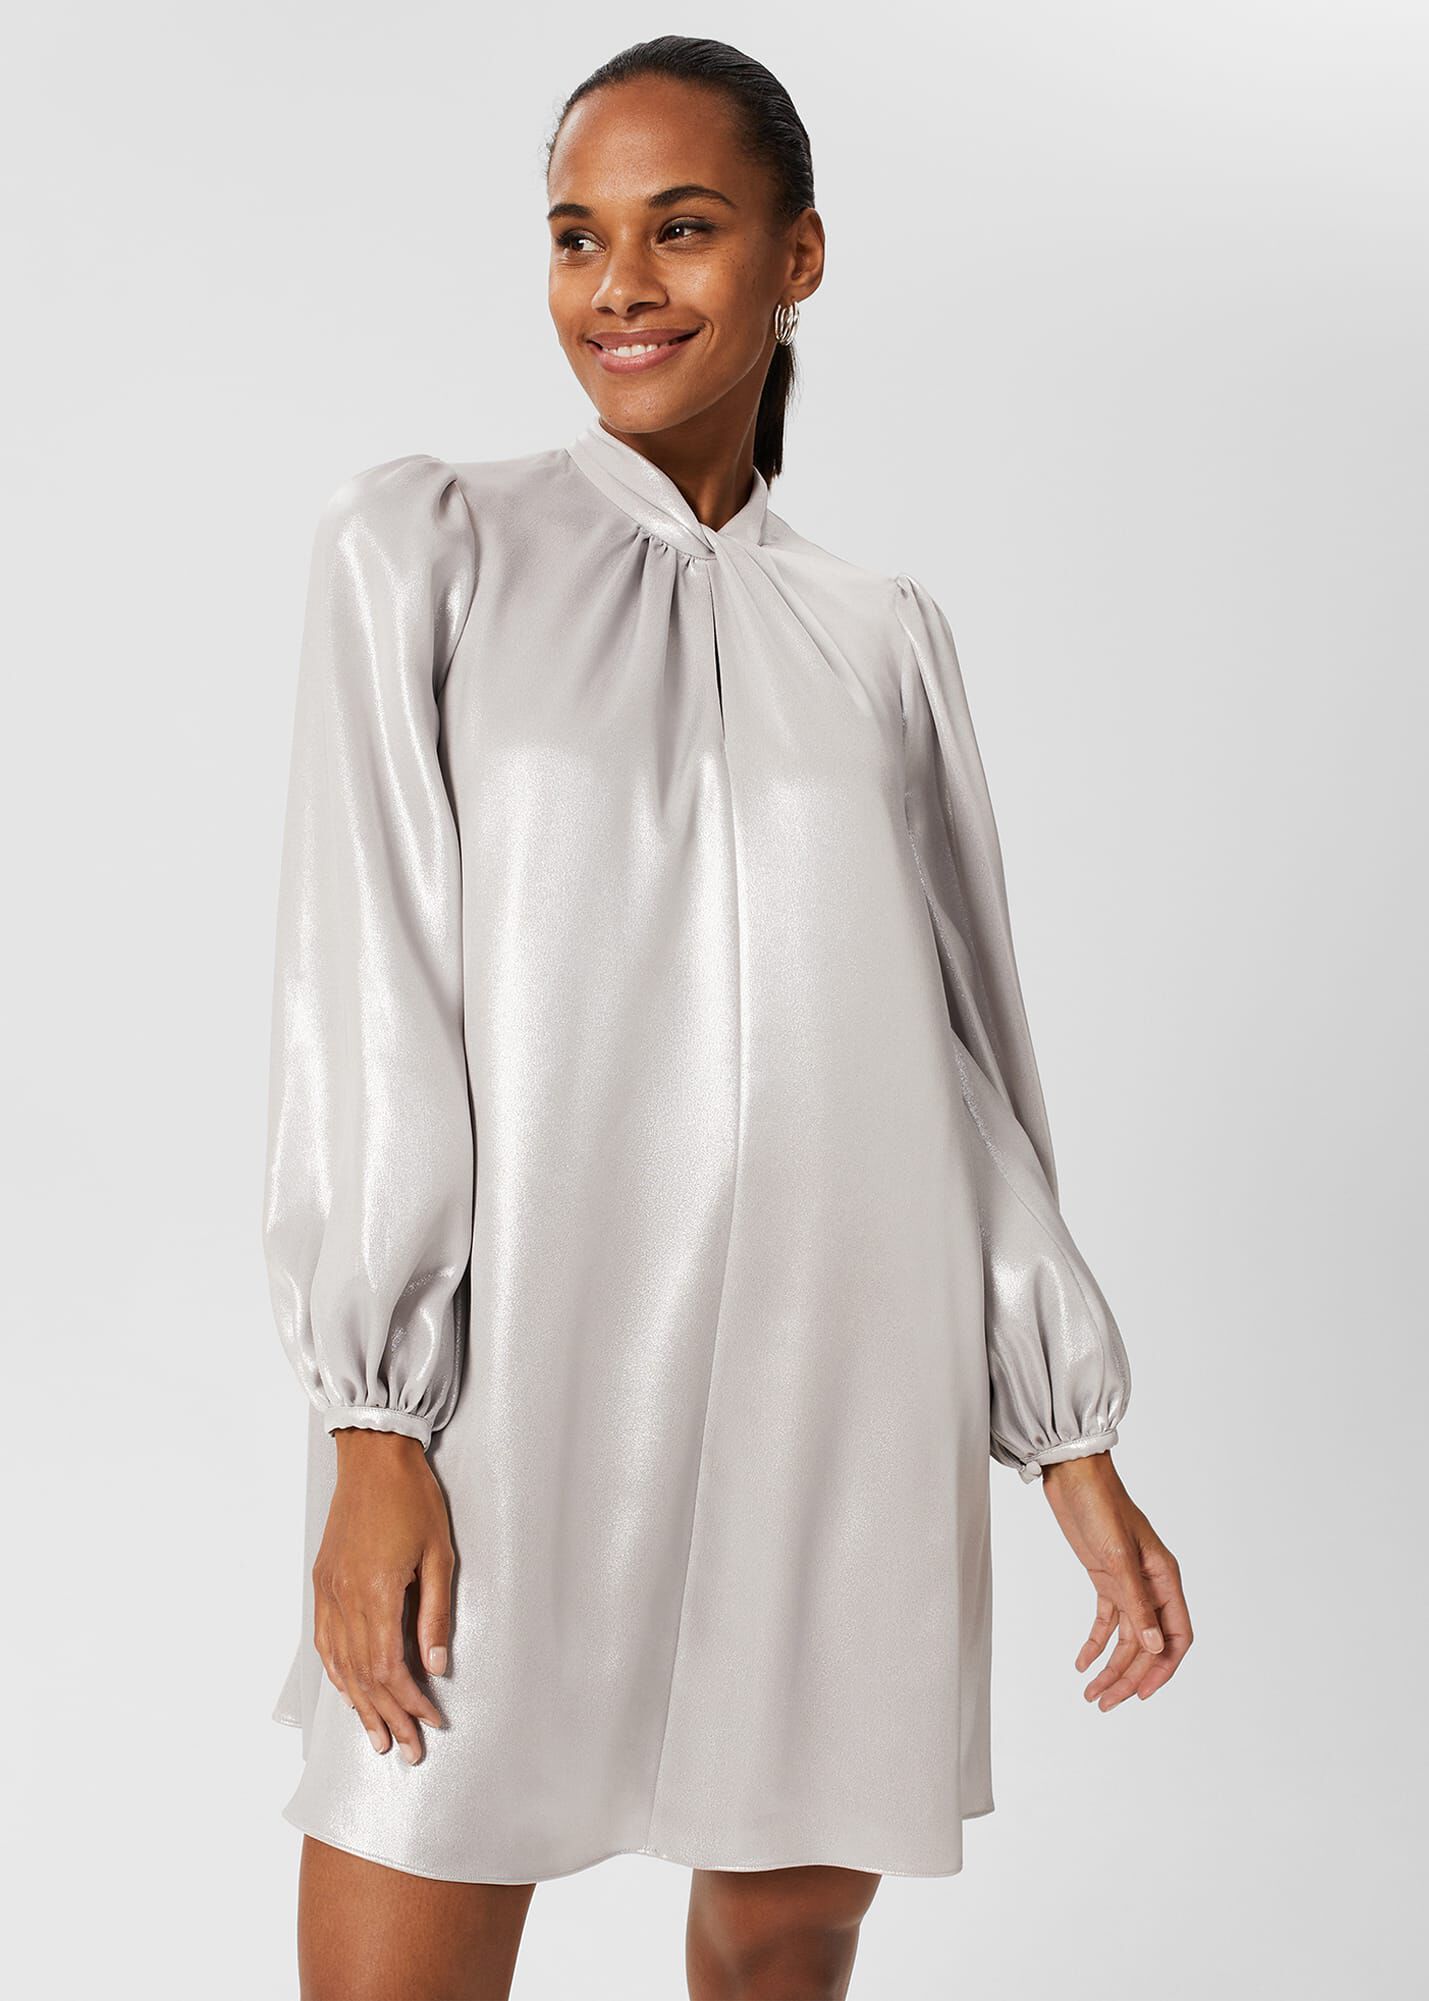 Silver Formal Dresses Under 100 Top Sellers | bellvalefarms.com